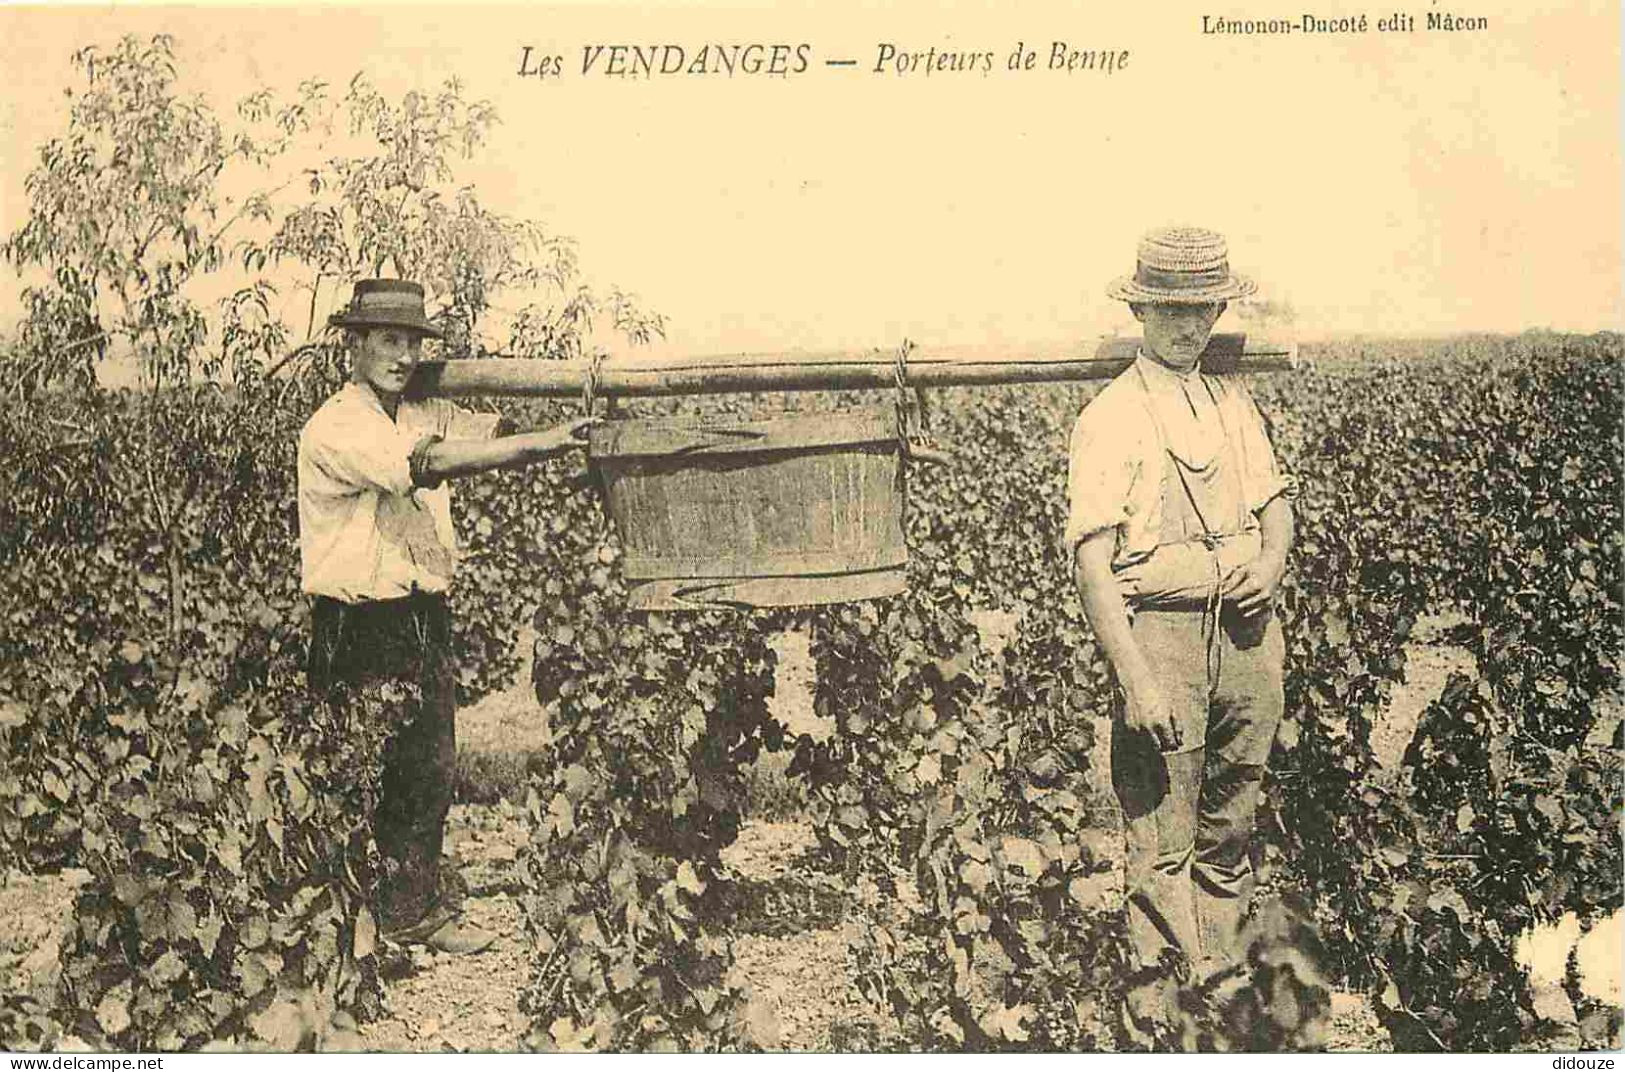 Reproduction CPA - Agriculture - Vigne - Les Vendanges - Porteurs De Benne - C'était La France - No 118 - CPM Format CPA - Vines